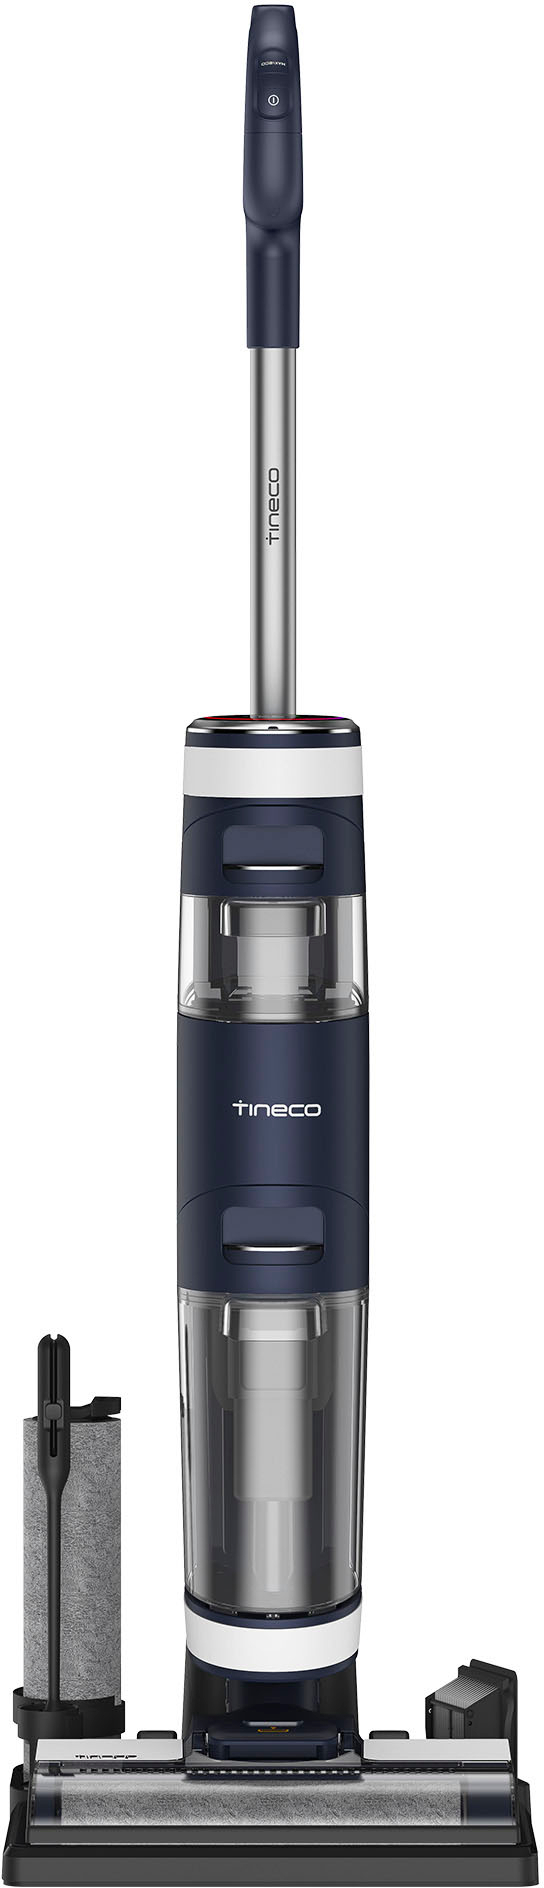 生活家電 掃除機 Tineco Floor One S3 Extreme – 3 in 1 Mop, Vacuum & Self Cleaning 